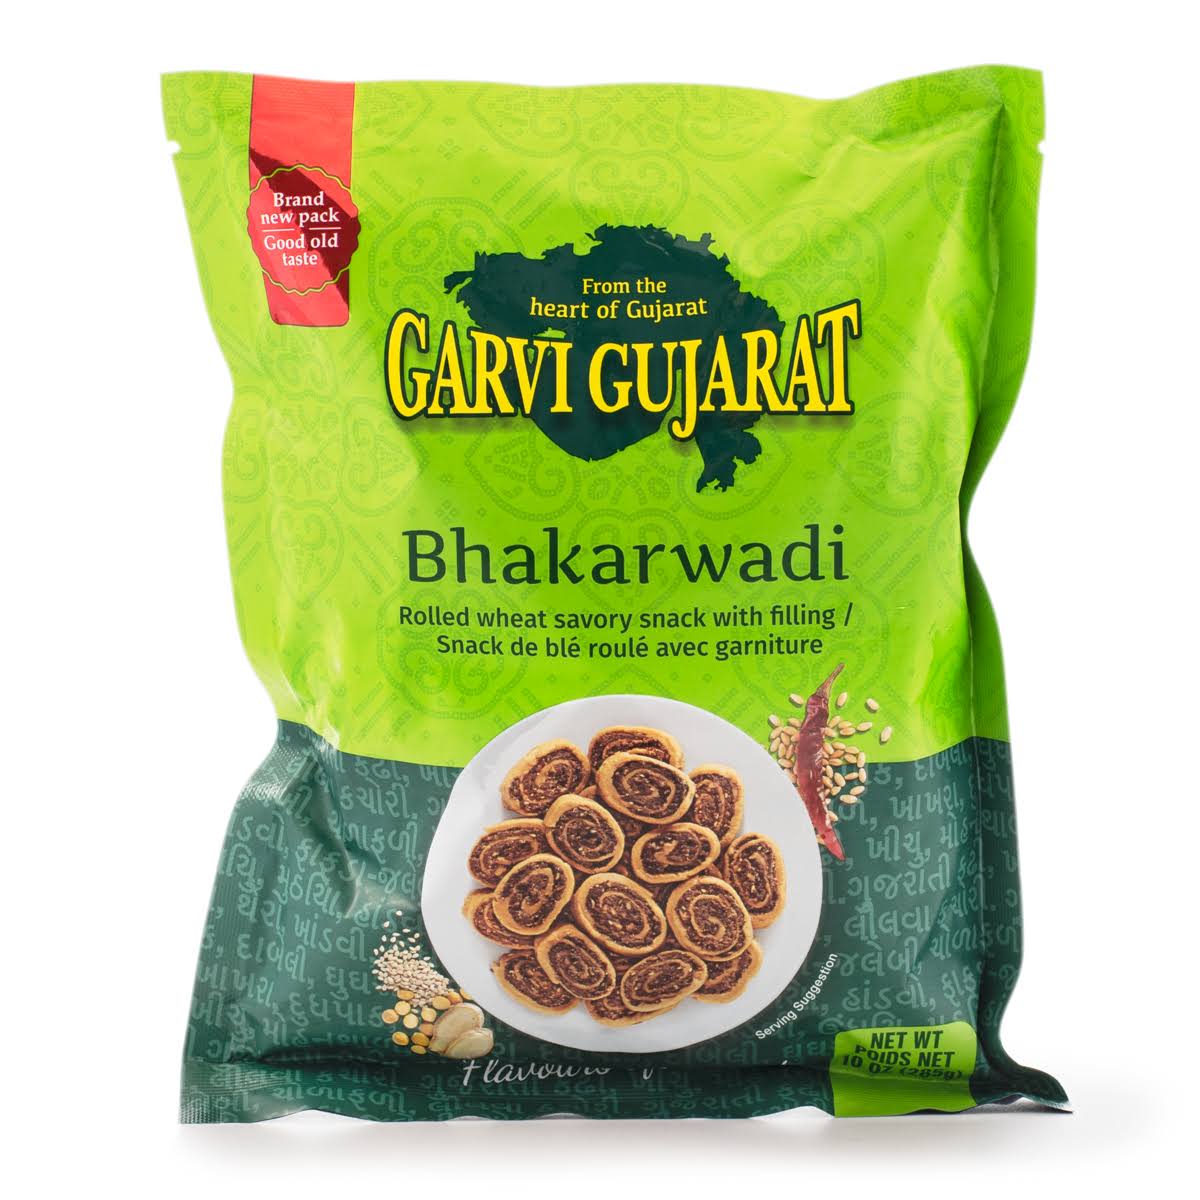 Garvi Gujarat Bhakarwadi - 10 oz (285 gm)